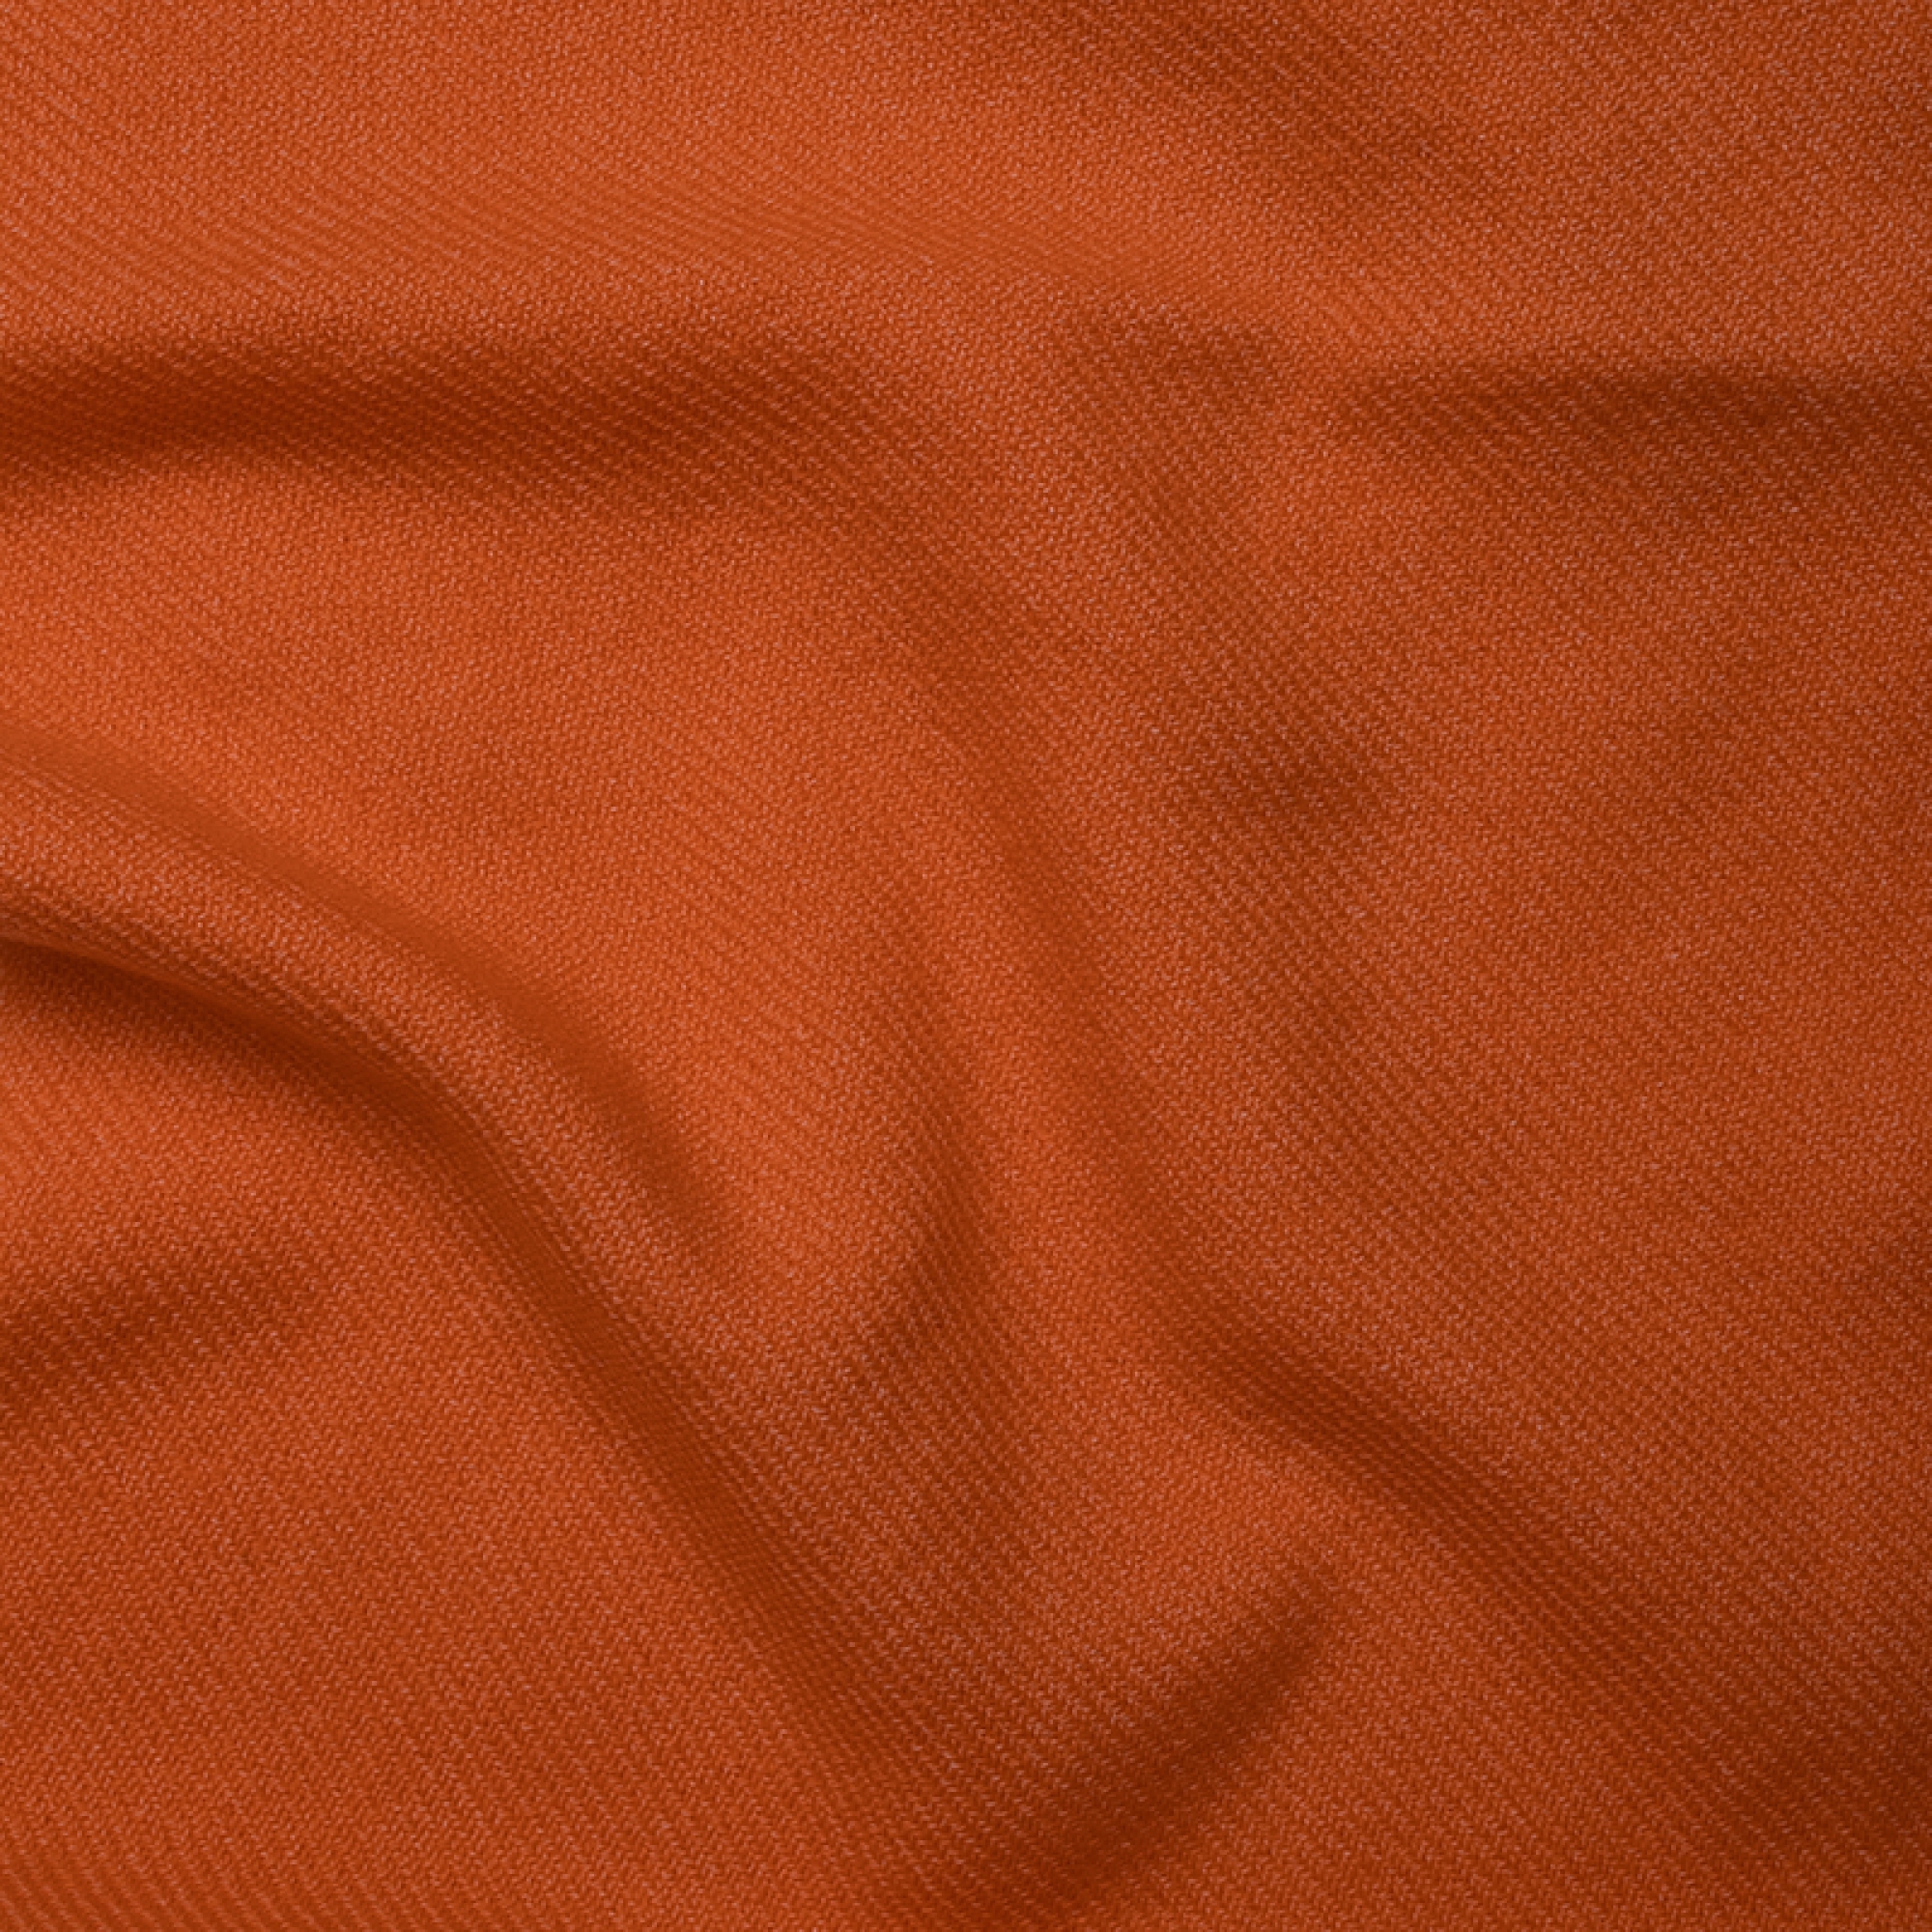 Cashmere accessori cocooning toodoo plain s 140 x 200 arancio 140 x 200 cm